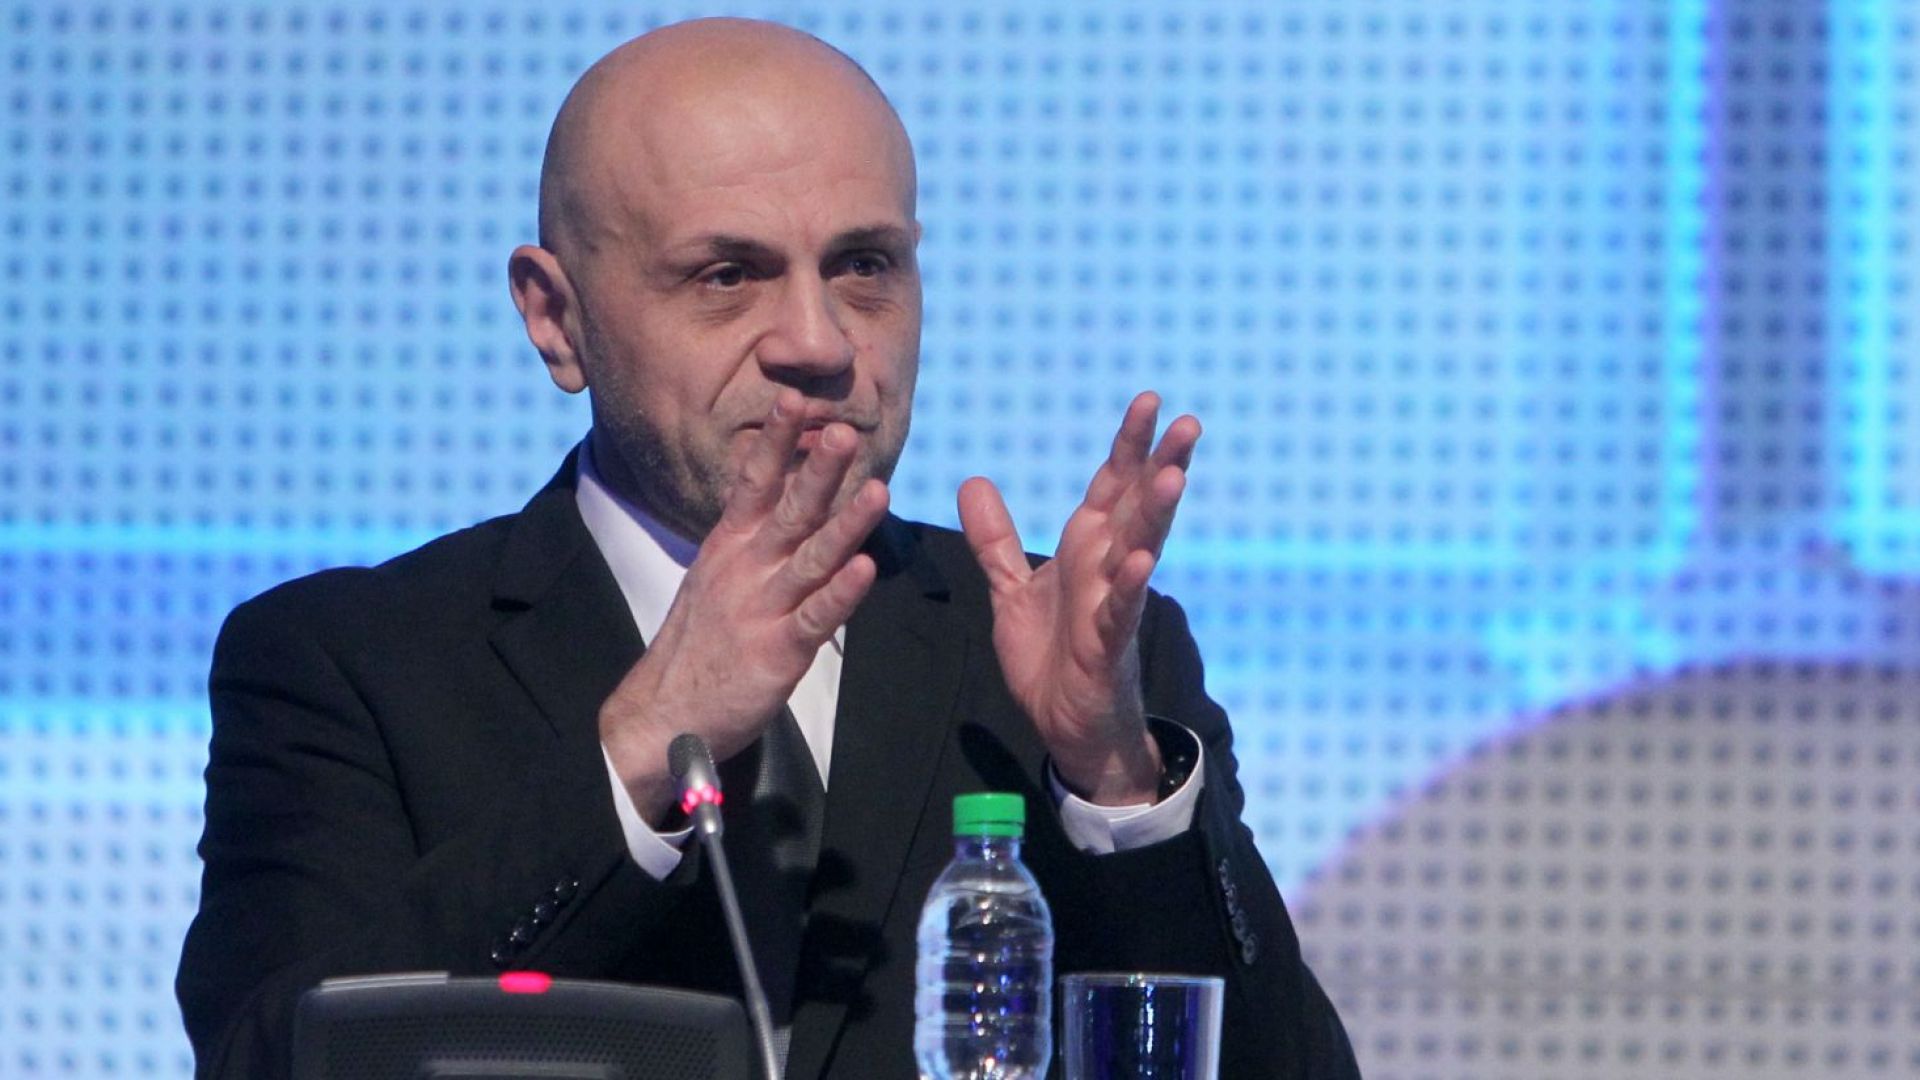 Томислав Дончев: През 2015 г. имаше опит за намеса в българските избори